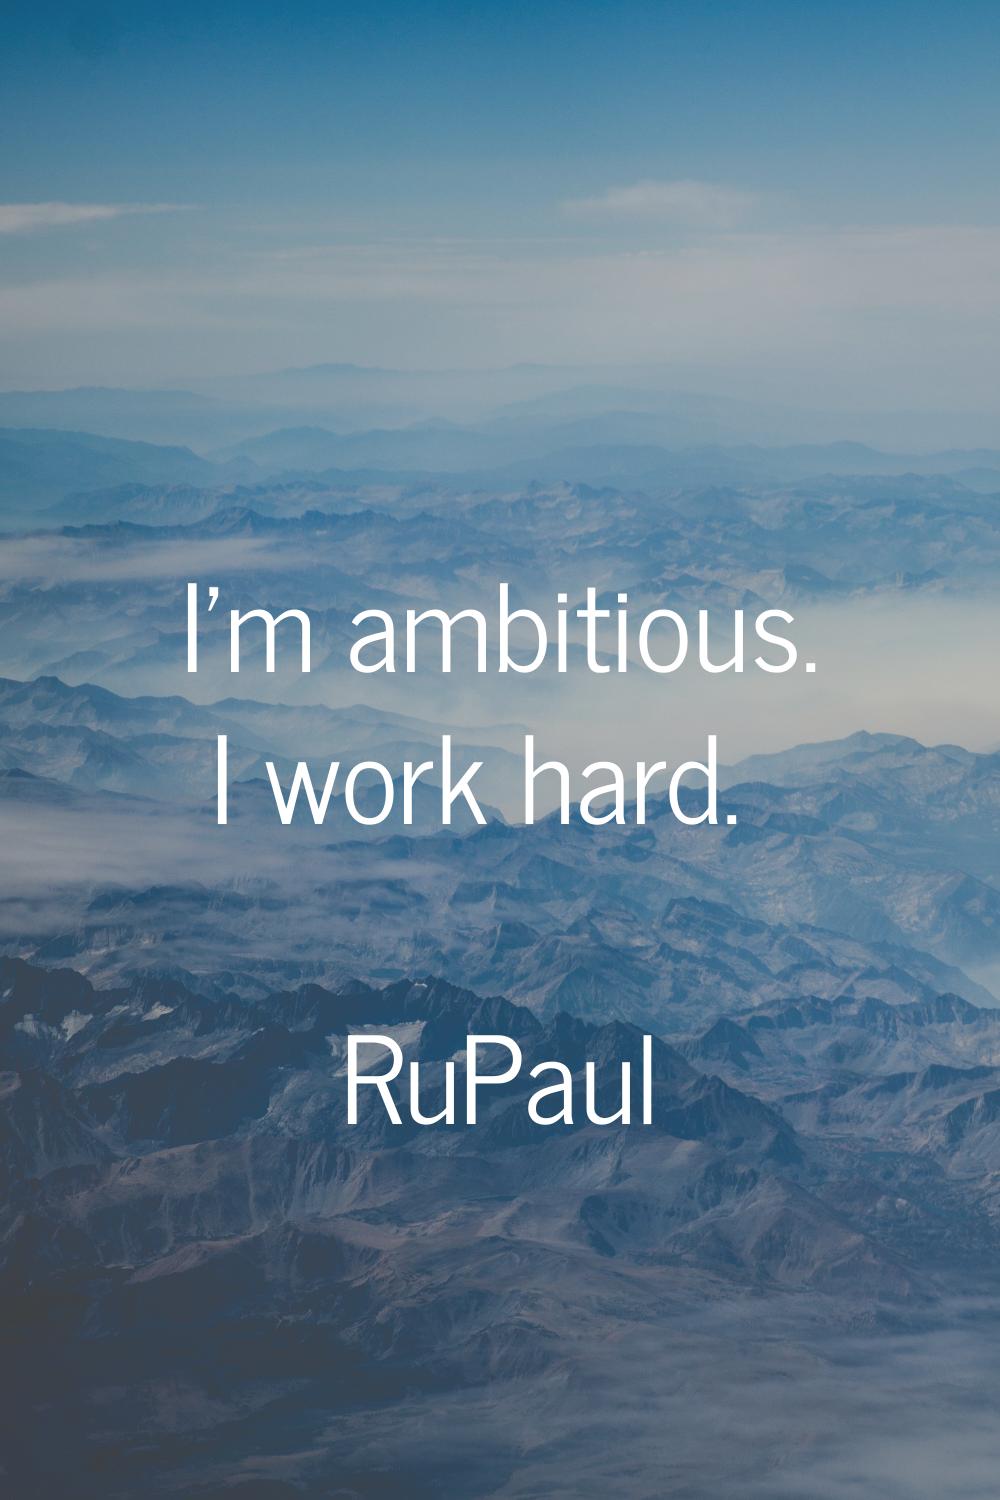 I'm ambitious. I work hard.